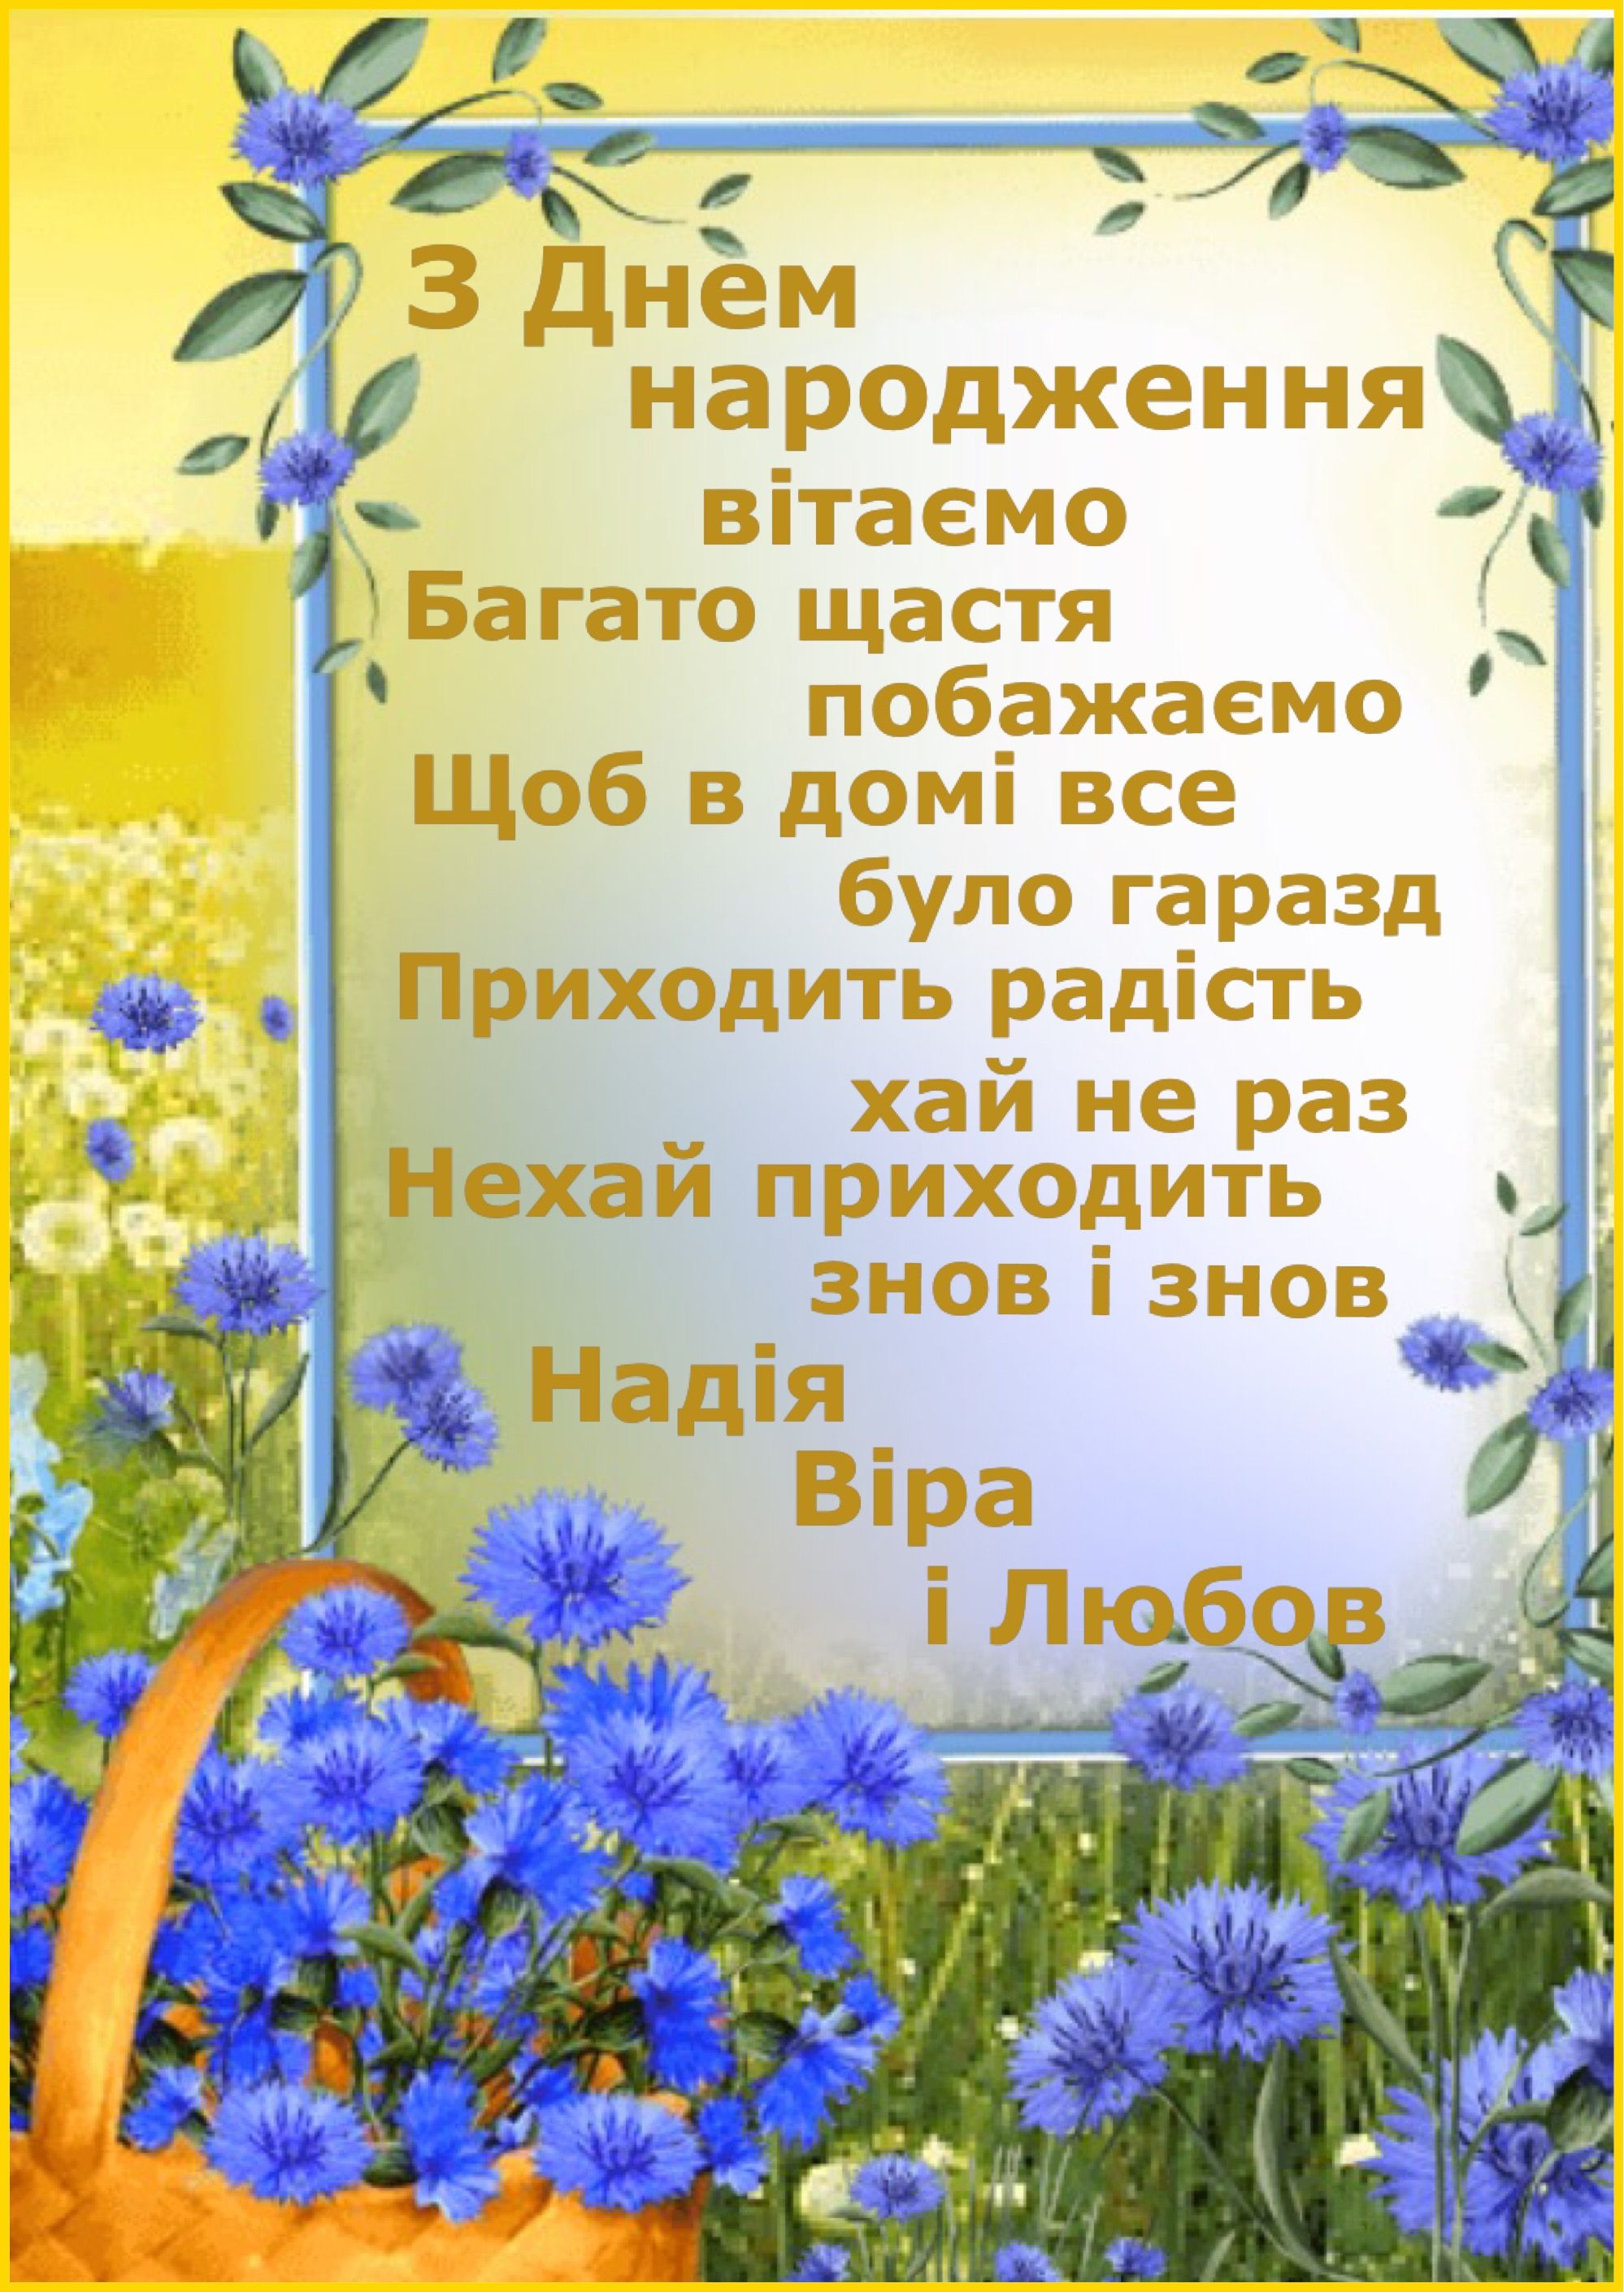 Привітати сестру з днем народження українською мовою
